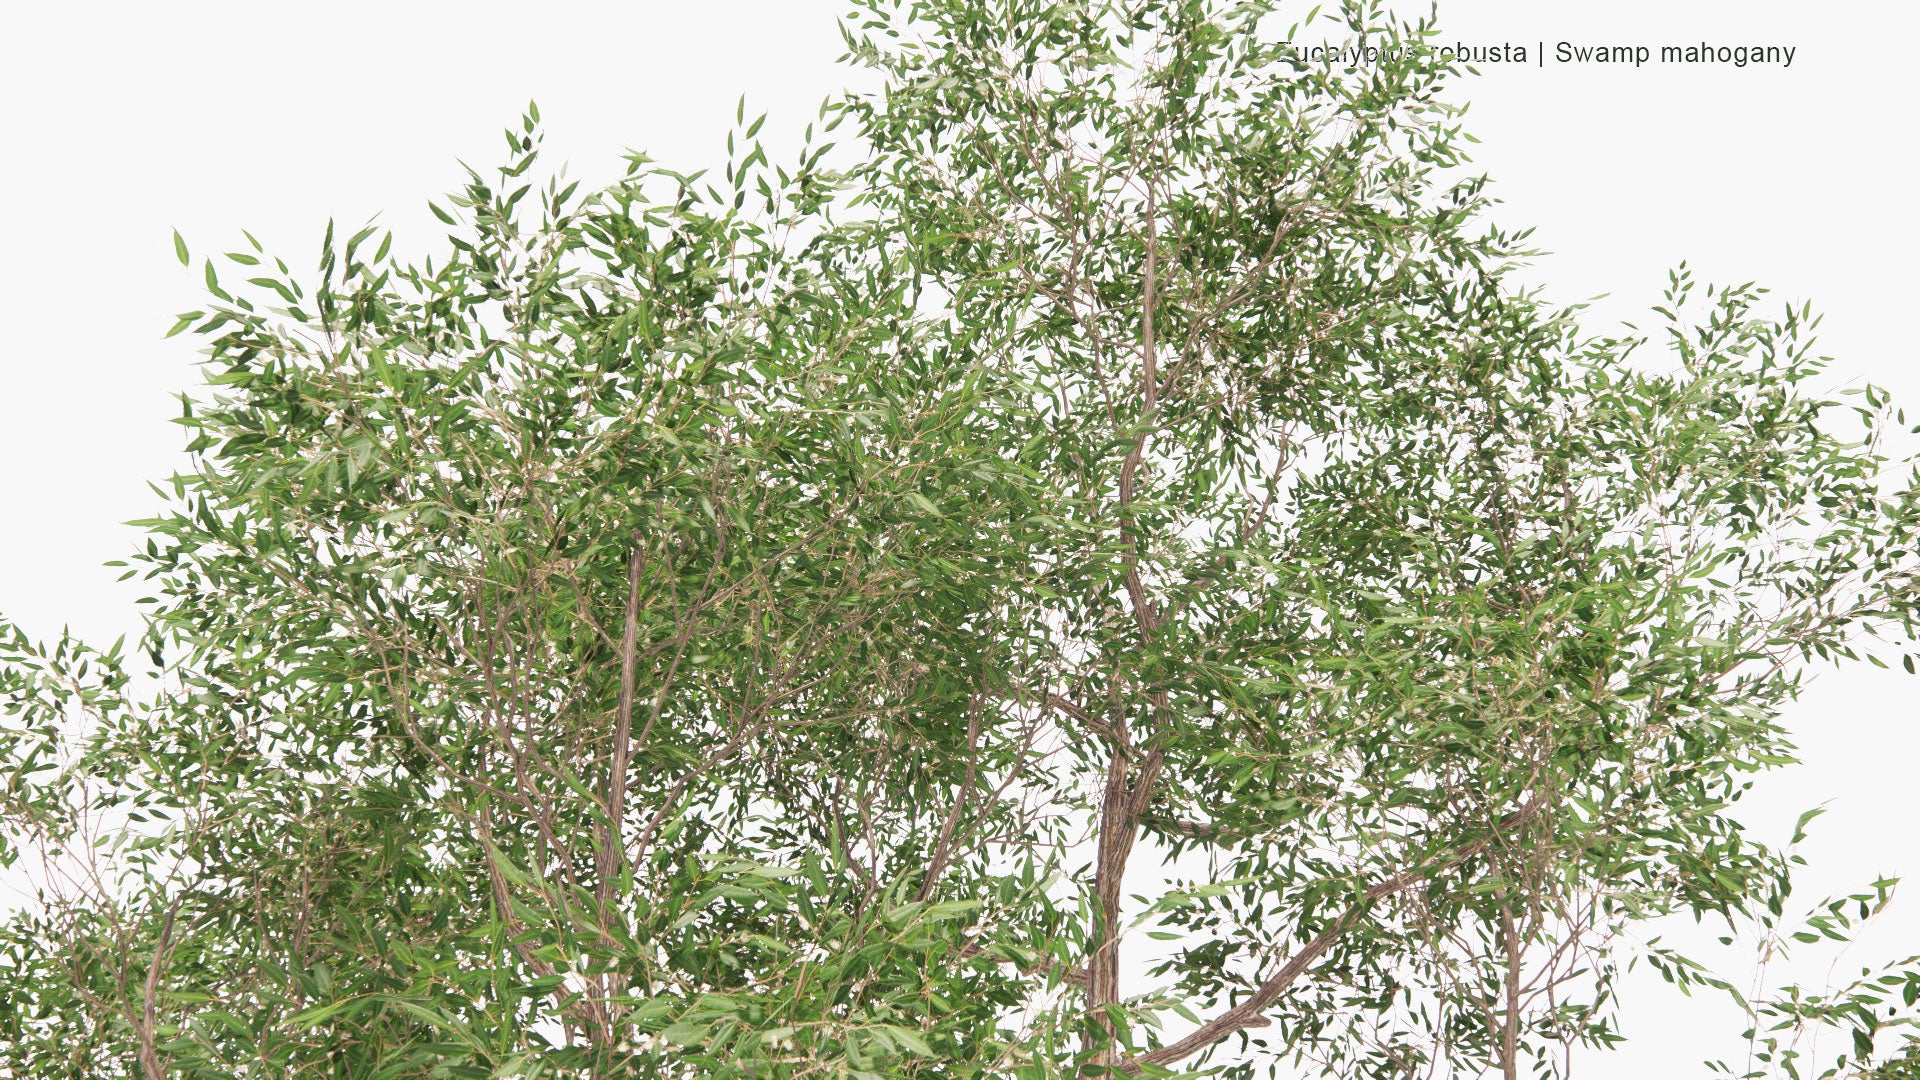 Low Poly Eucalyptus Robusta - Swamp Mahogany (3D Model)